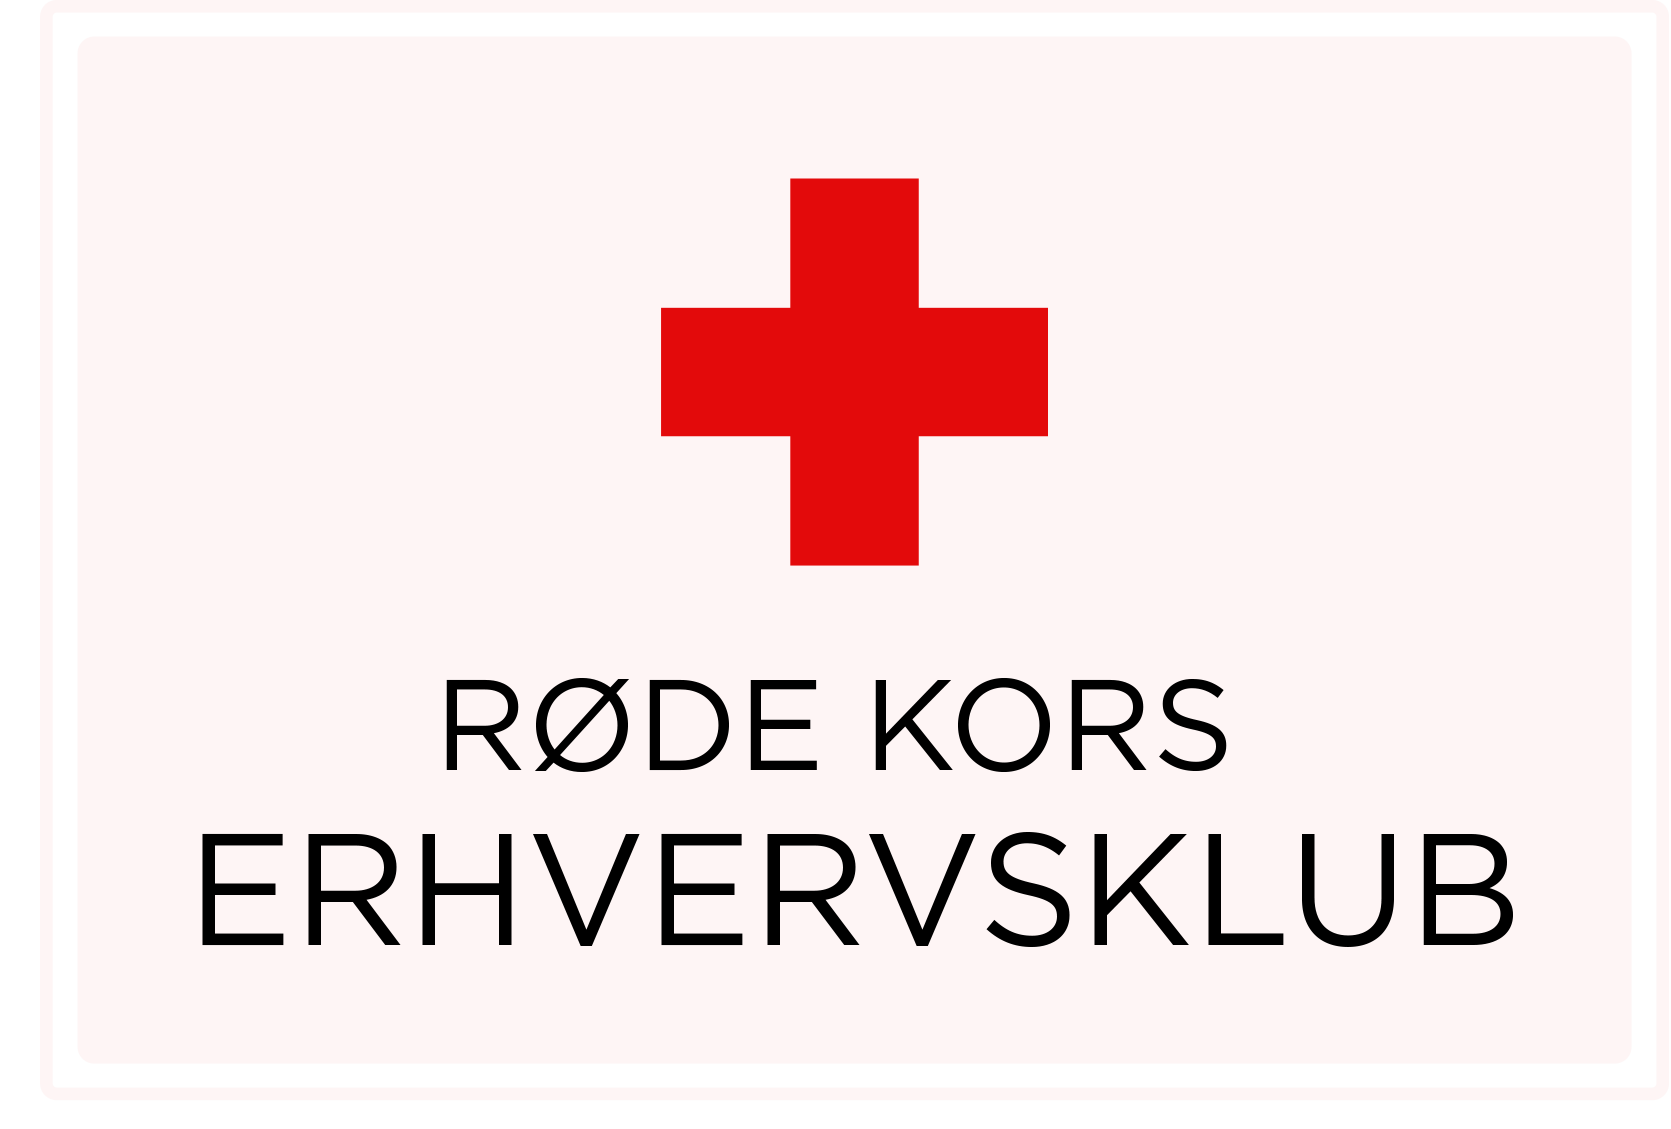 erhvervsklub logo 2 rode kors